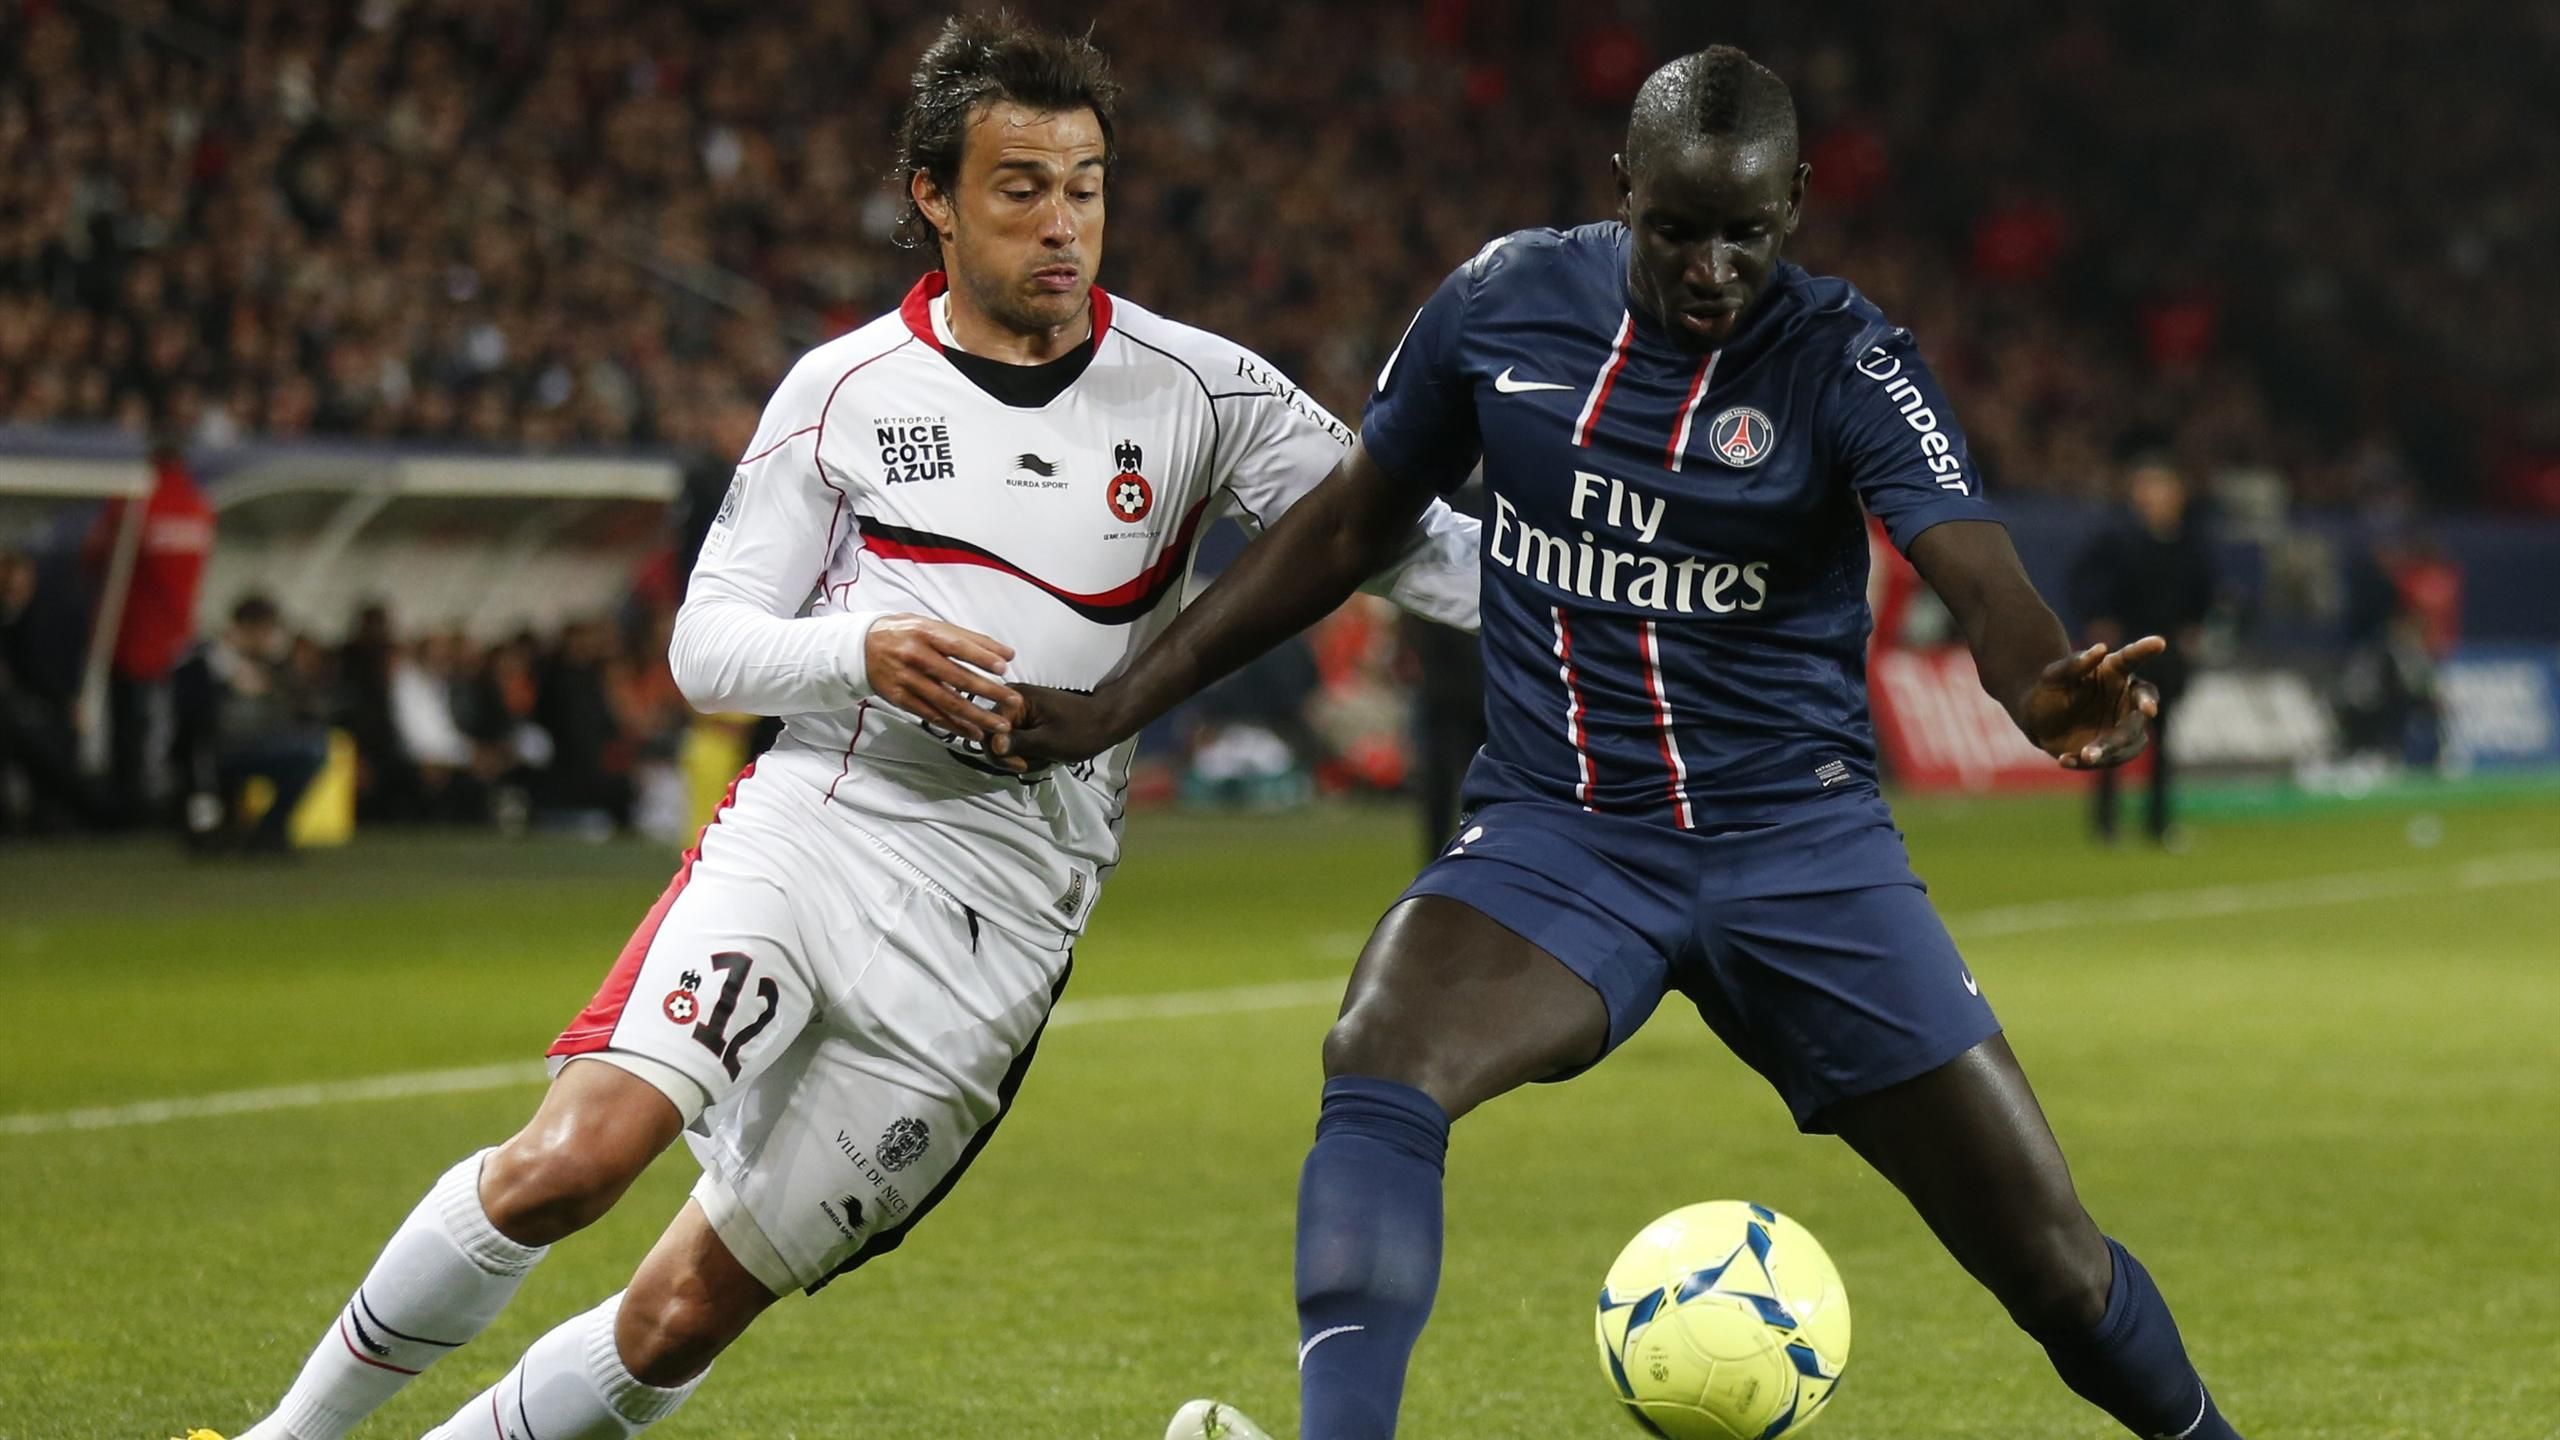 Nice - Paris Saint Germain (PSG) maçını canlı izle, canlı takip et